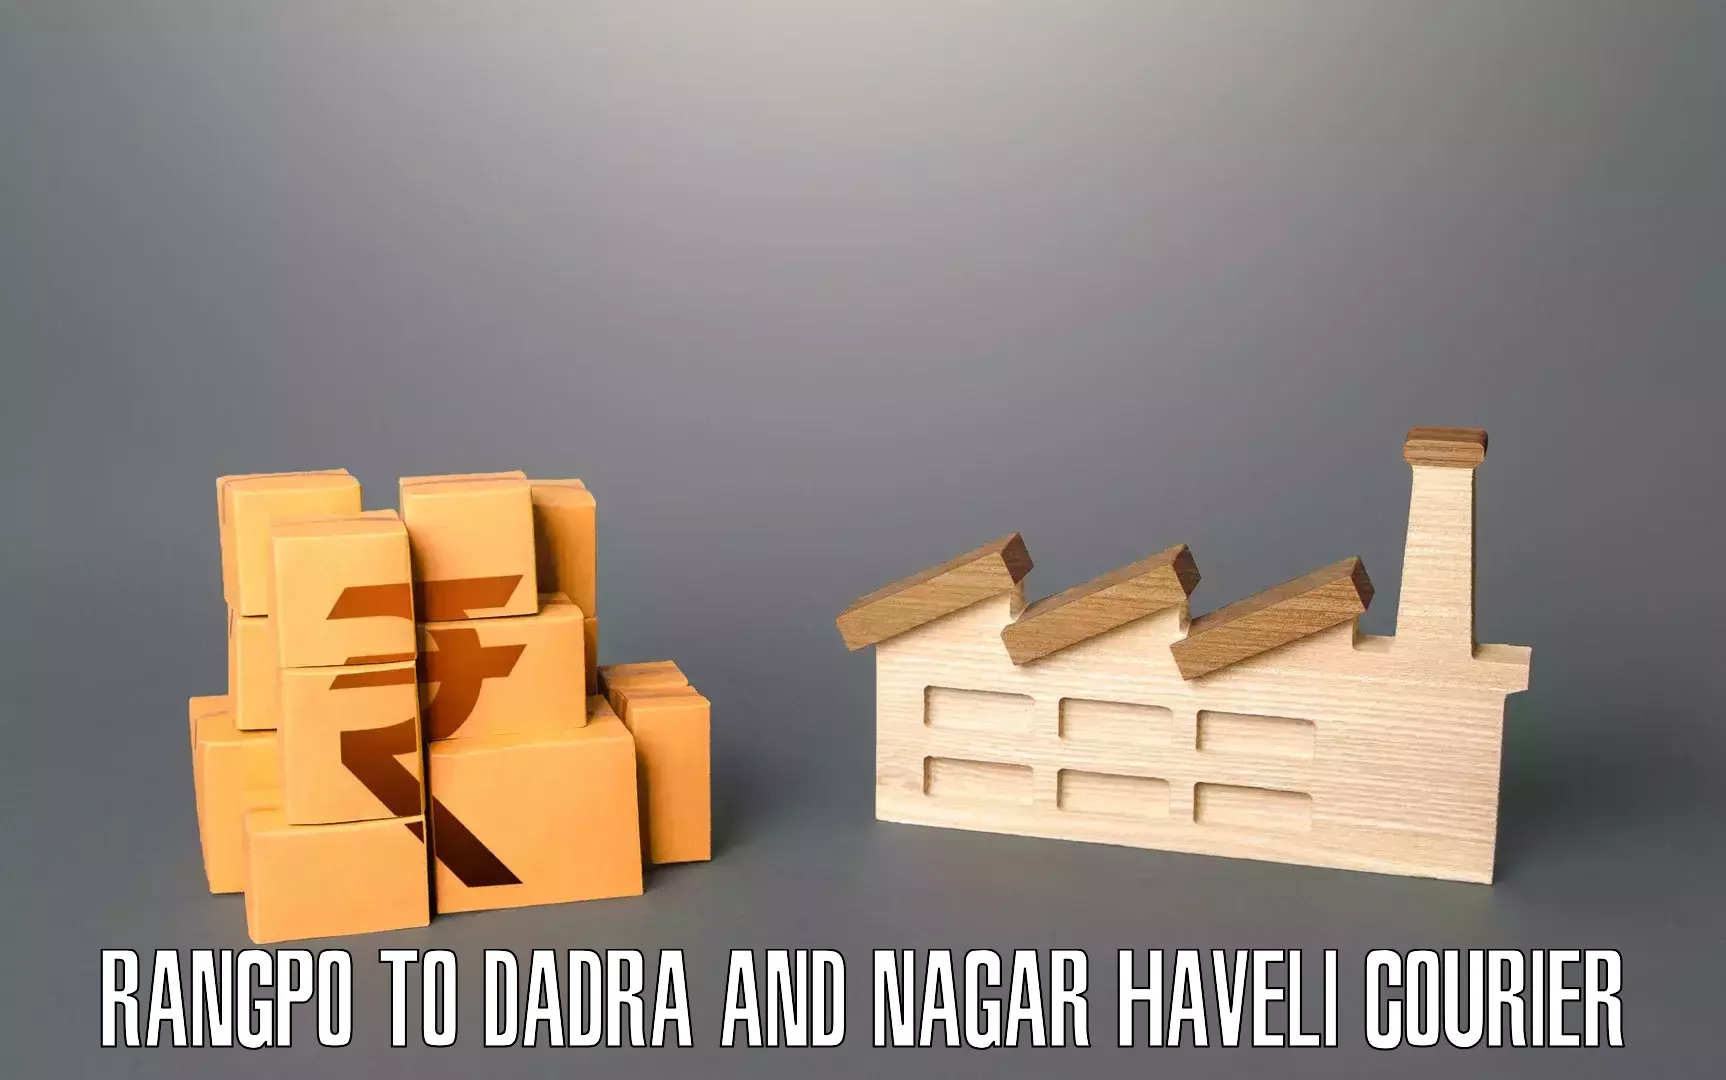 Safe household movers Rangpo to Dadra and Nagar Haveli